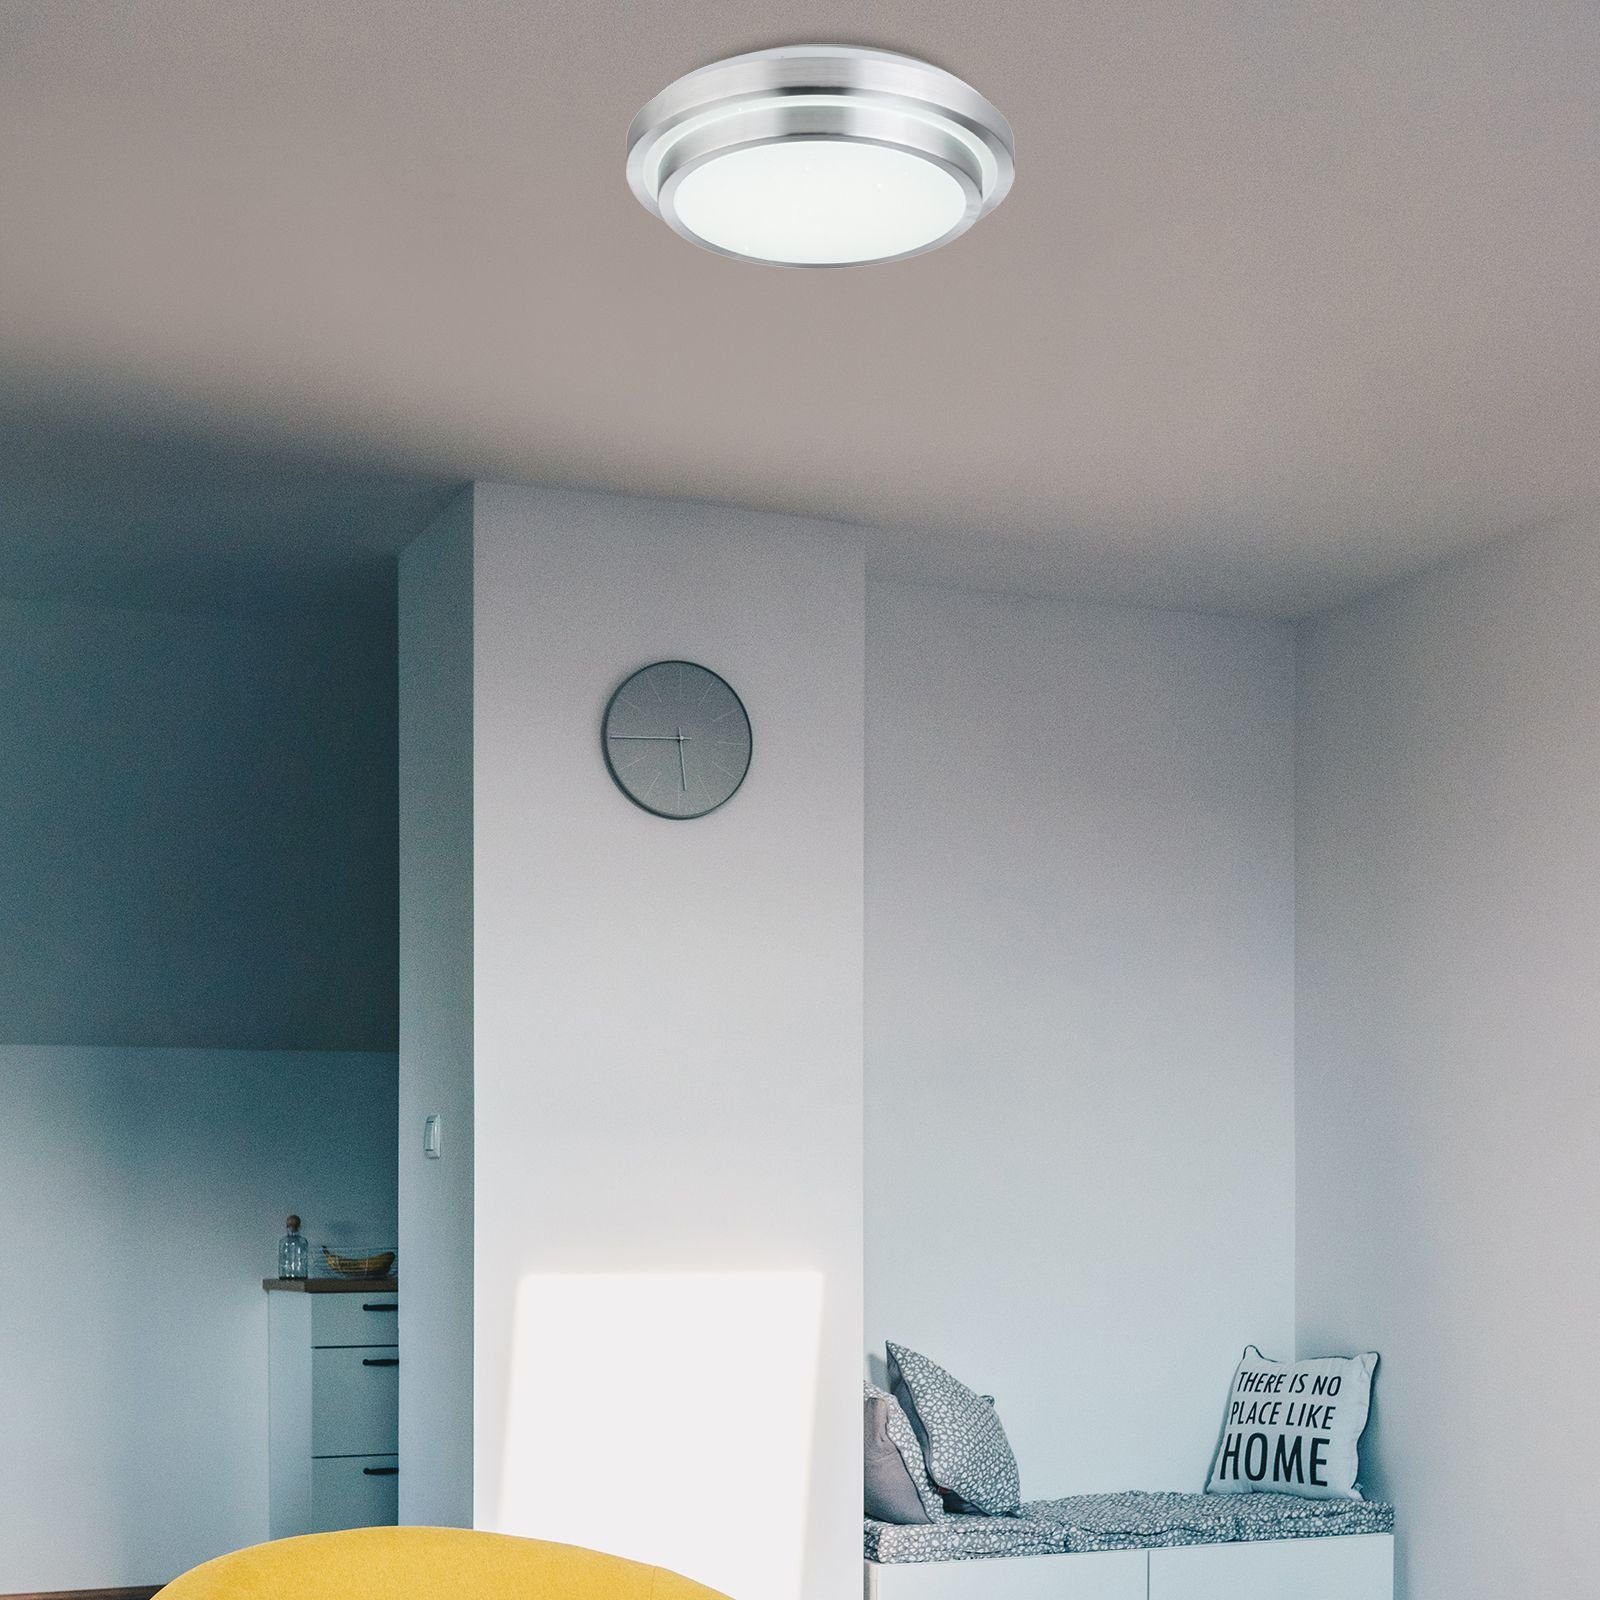 Deckenleuchte Globo Deckenlampe Wohnzimmer Fernbedienung LED GLOBO dimmbar Deckenleuchte